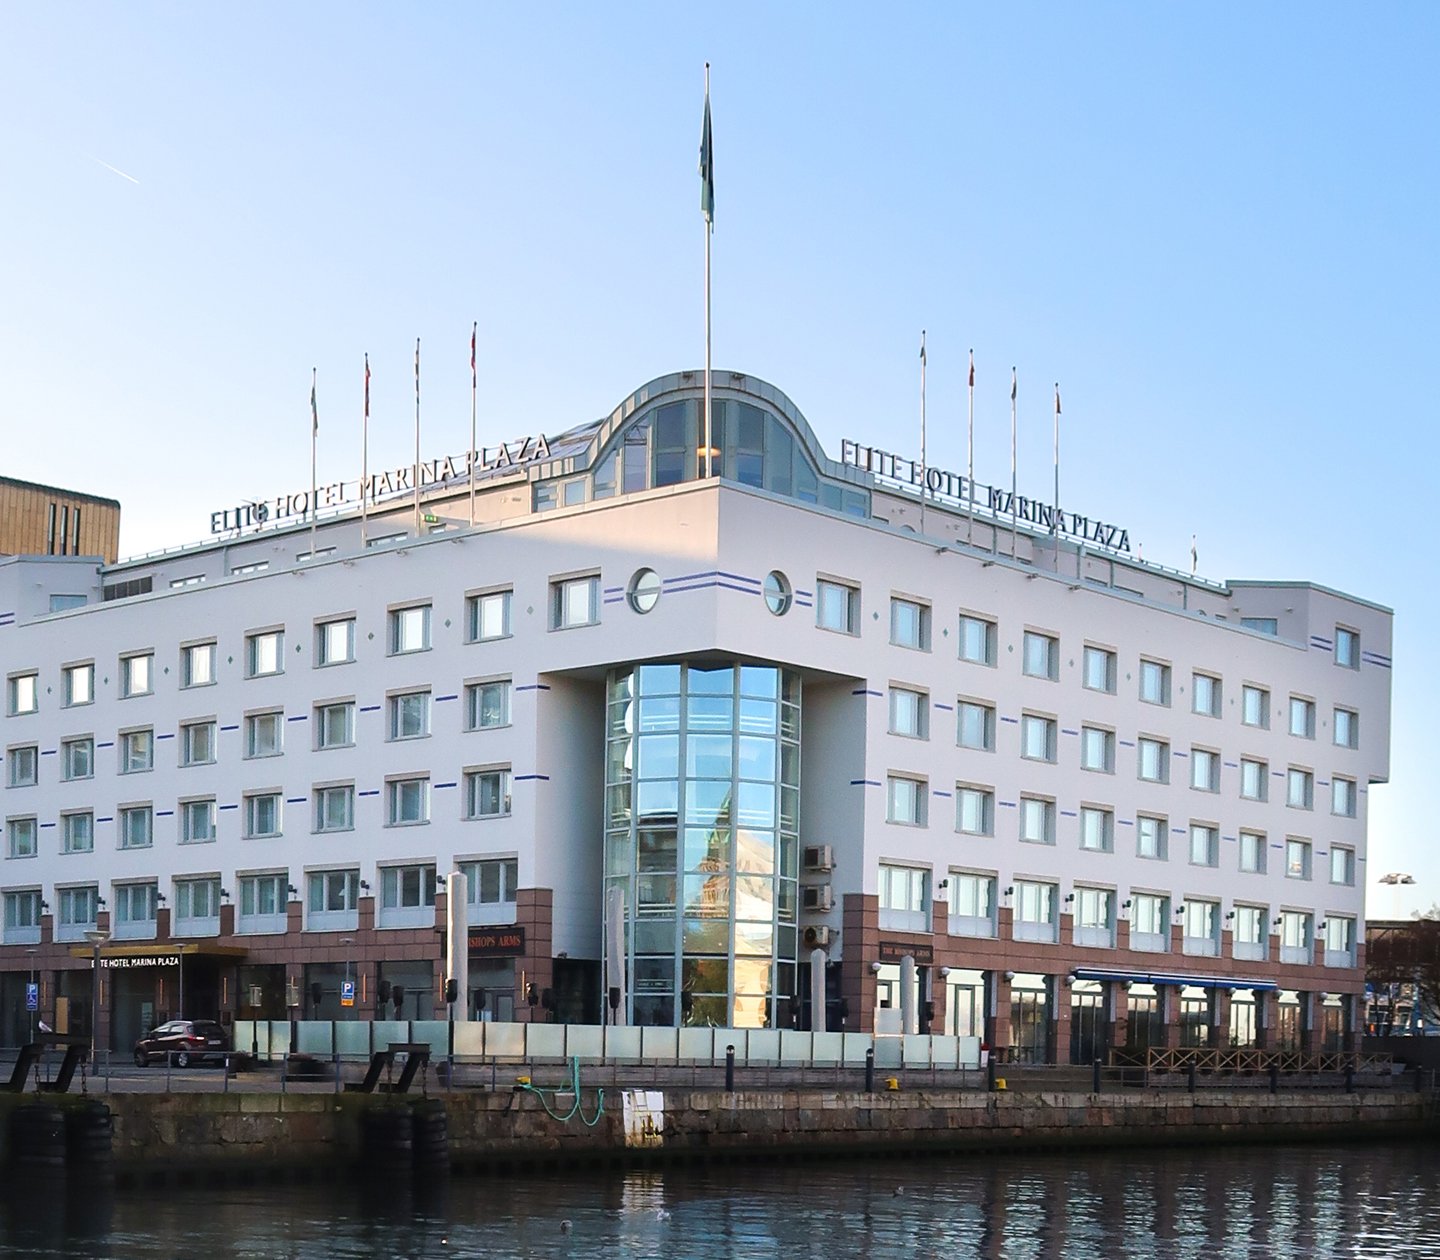 Fasaden på Elite Hotel Marina Plaza i Helsingborg